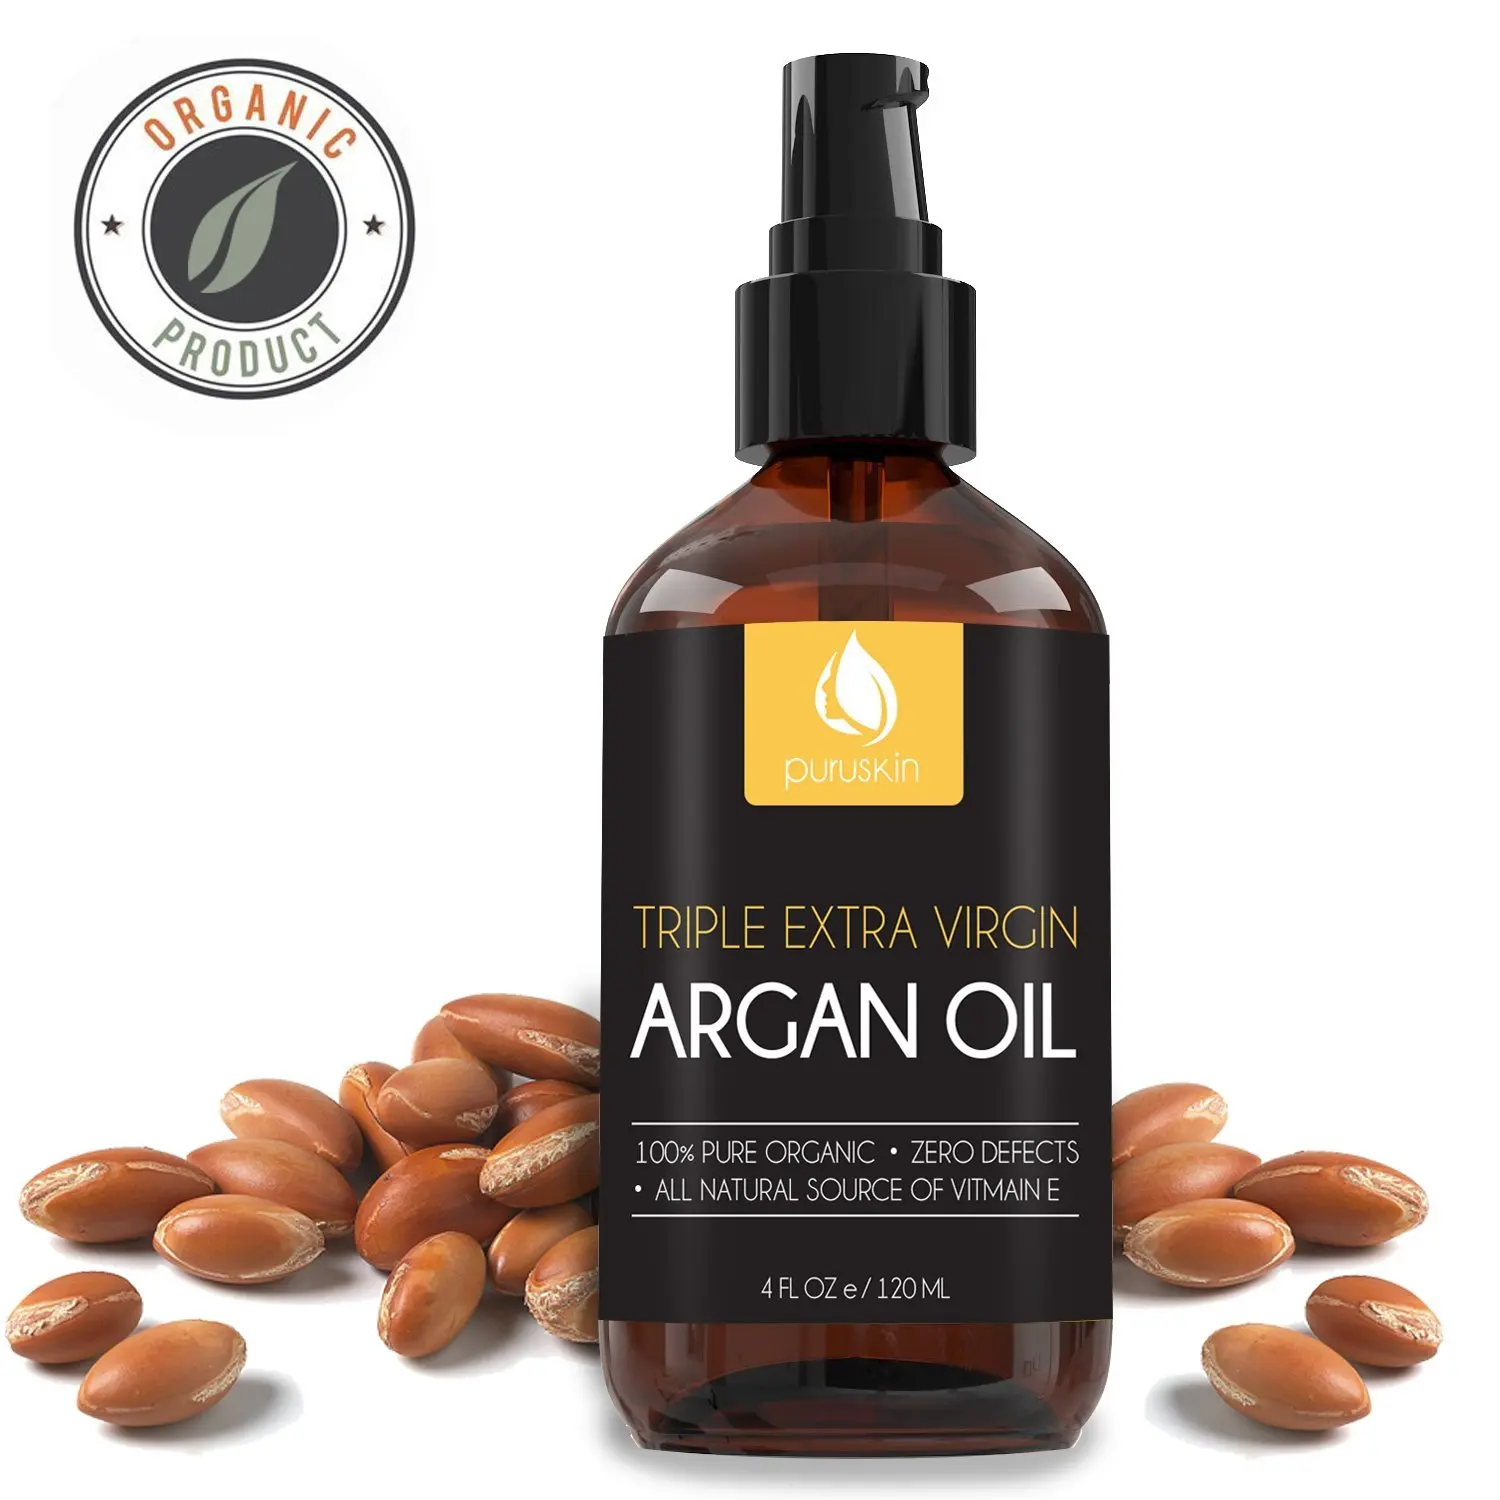 BEST VIRGIN ARGAN OIL for Beautiful Hair, Face, Nails, Organic & Pure M...